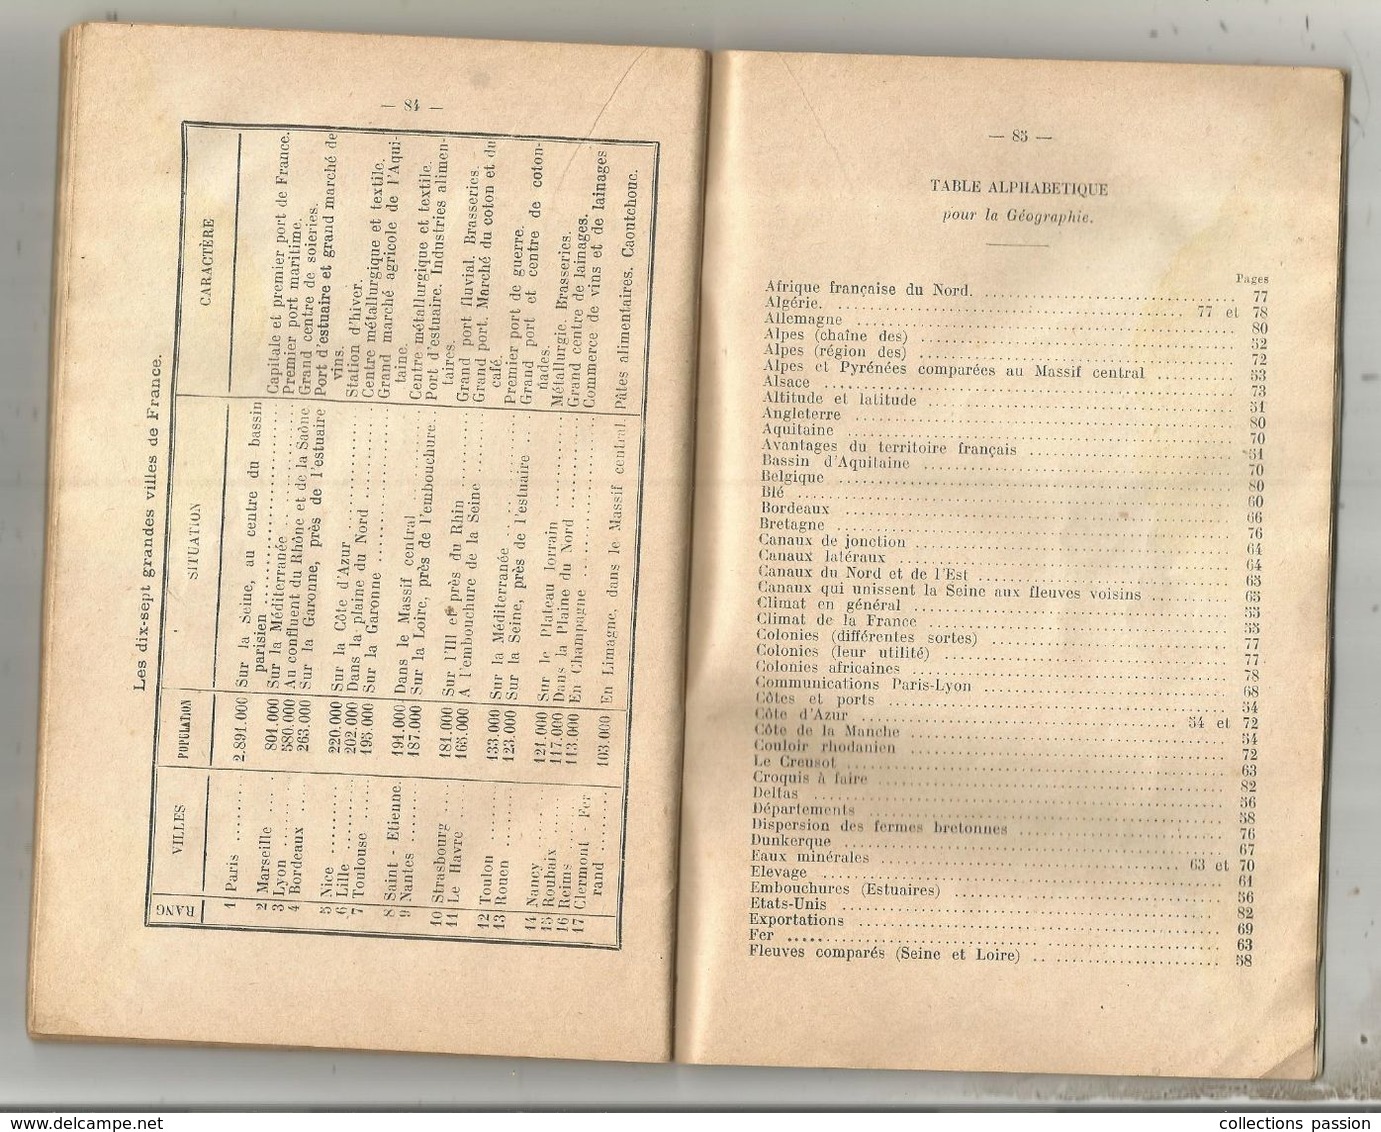 Deux cents devoirs d'histoire et de géographie , certificat d'études , par J. LE GOUIL , 1934 , 96 pages, frais fr 4.15e